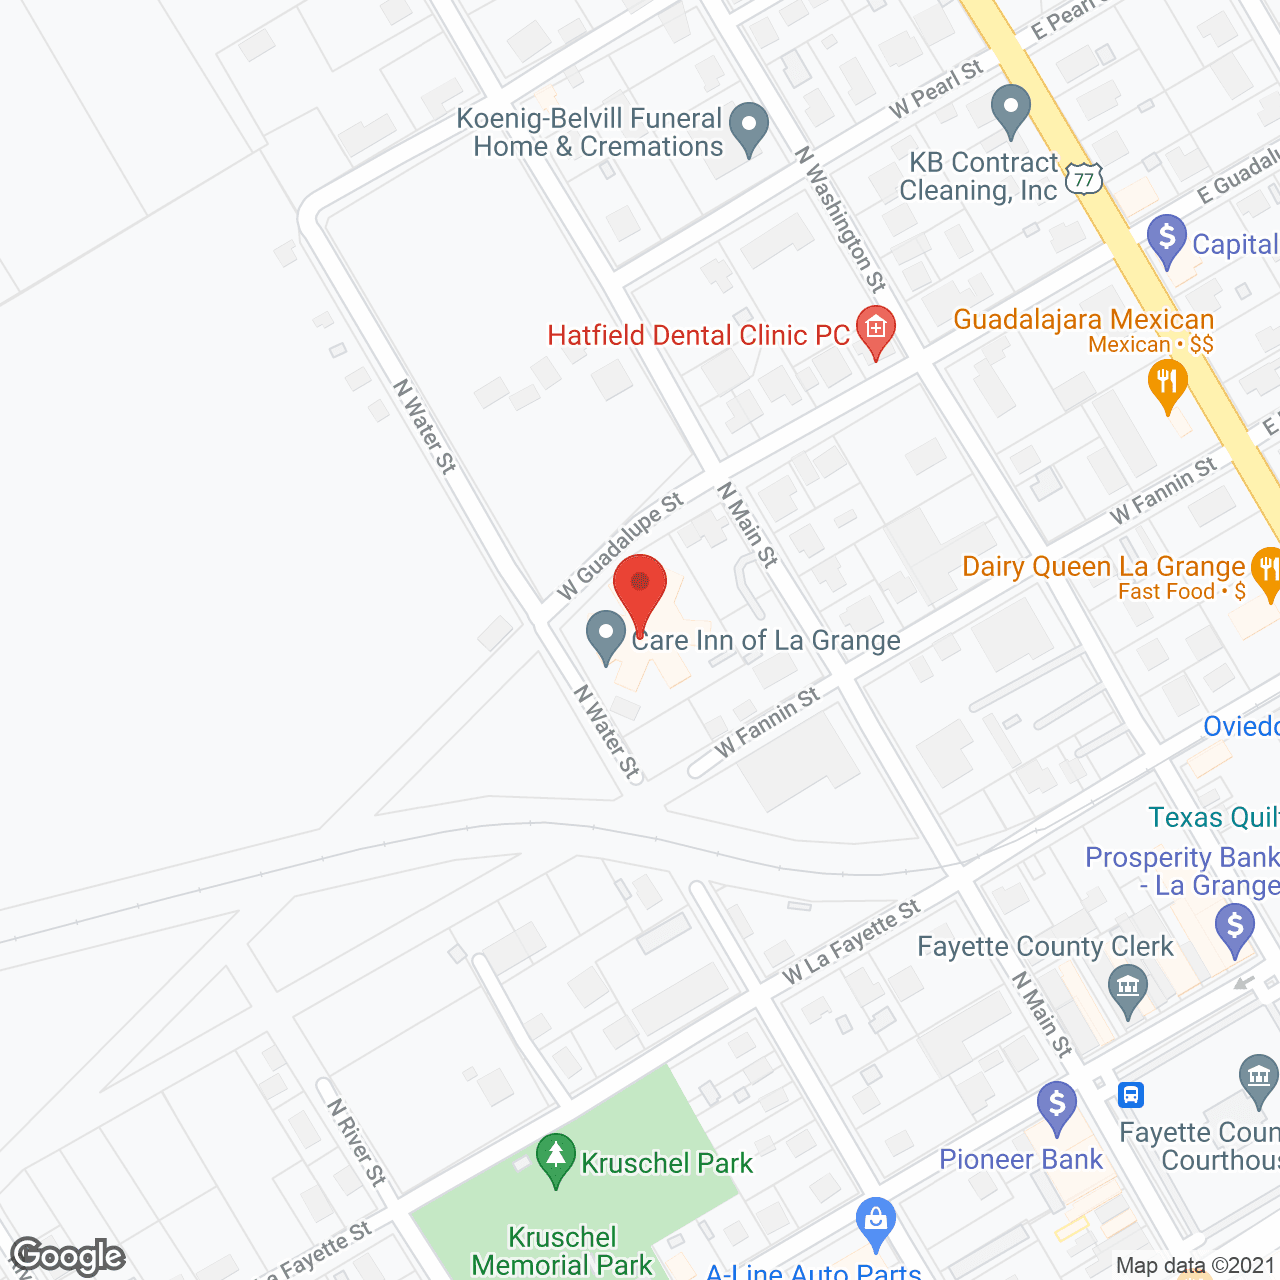 Care Inn of La Grange in google map